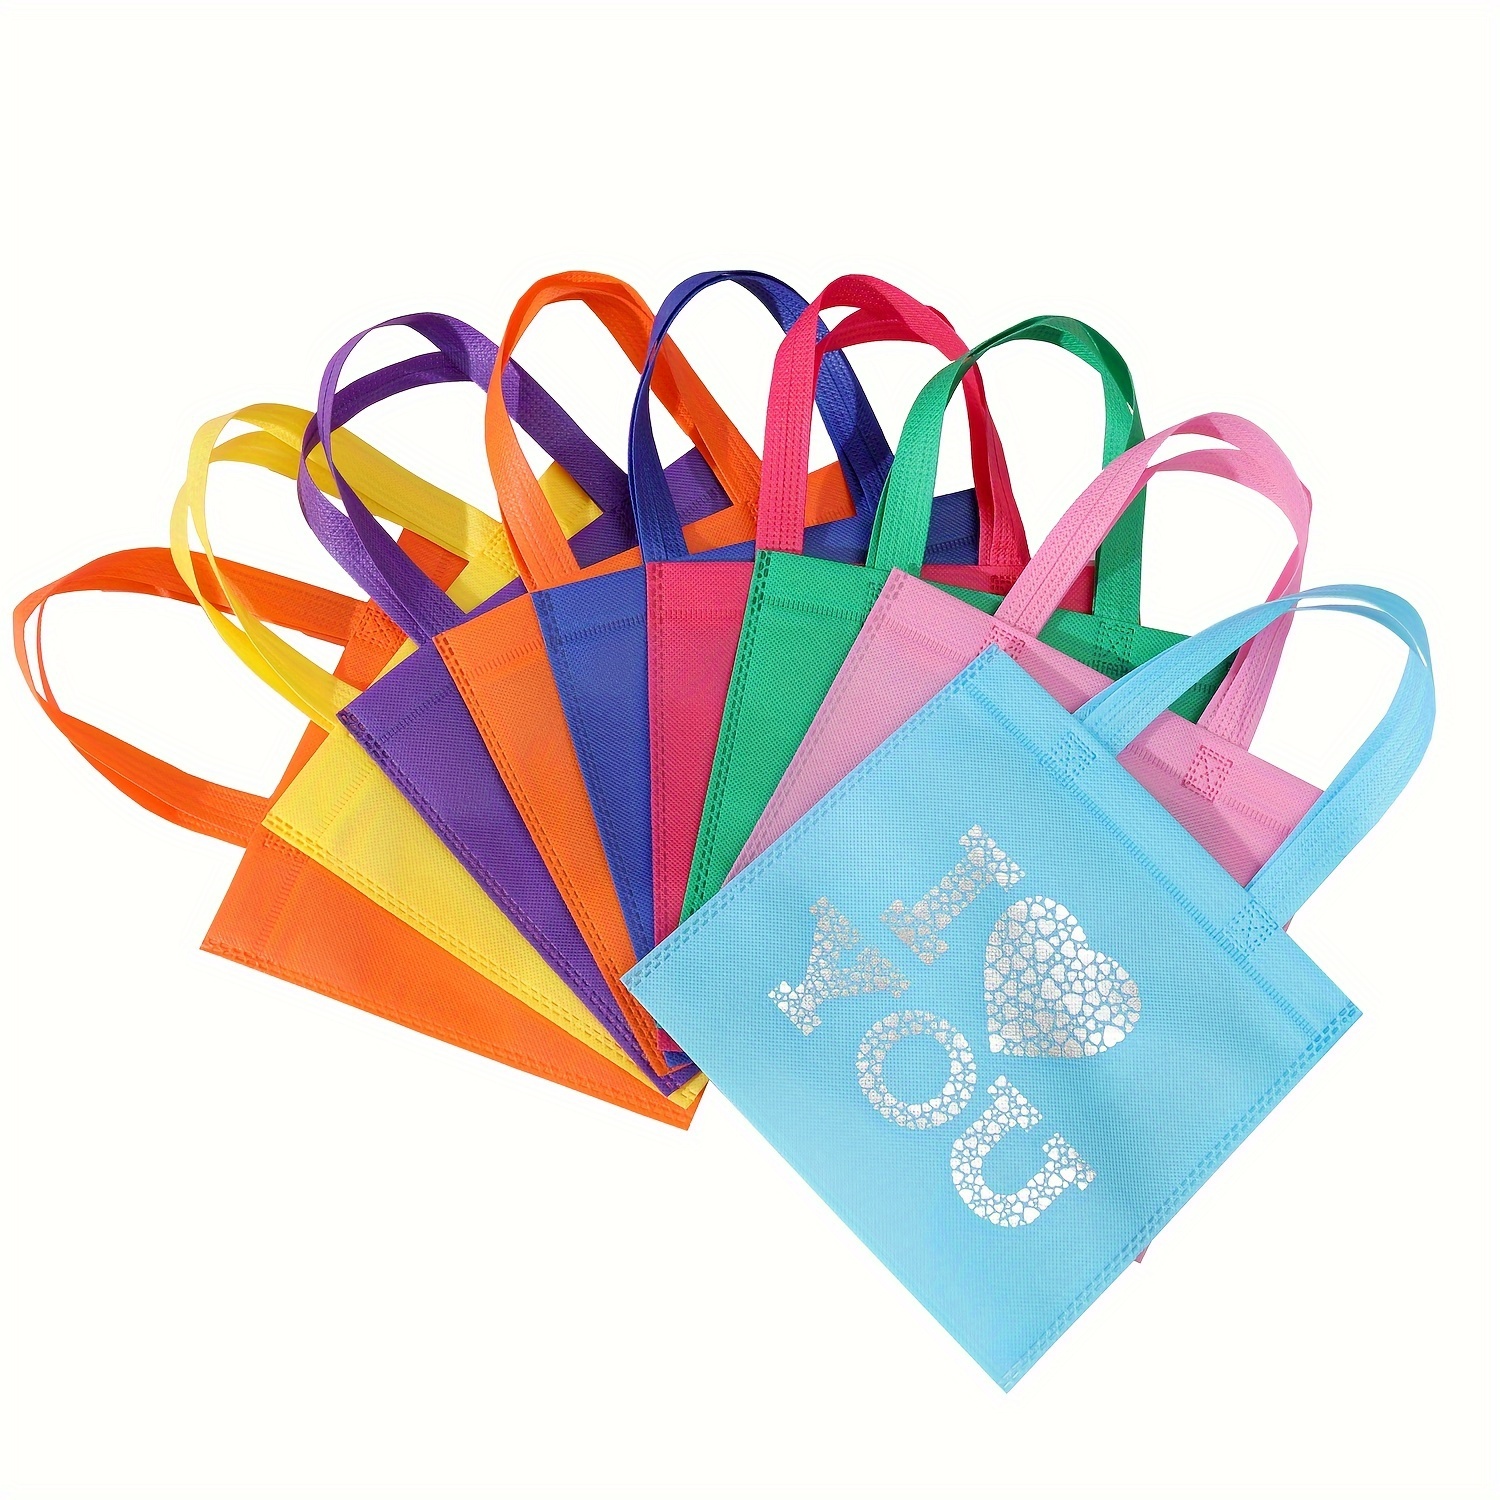 Tomnk 36 bolsas de papel para fiesta de 9 colores bolsas de regalo pequeñas  de 9 colores bolsa de regalo envuelta para cumpleaños baby showers  manualidades y actividades mayo boda varios colores